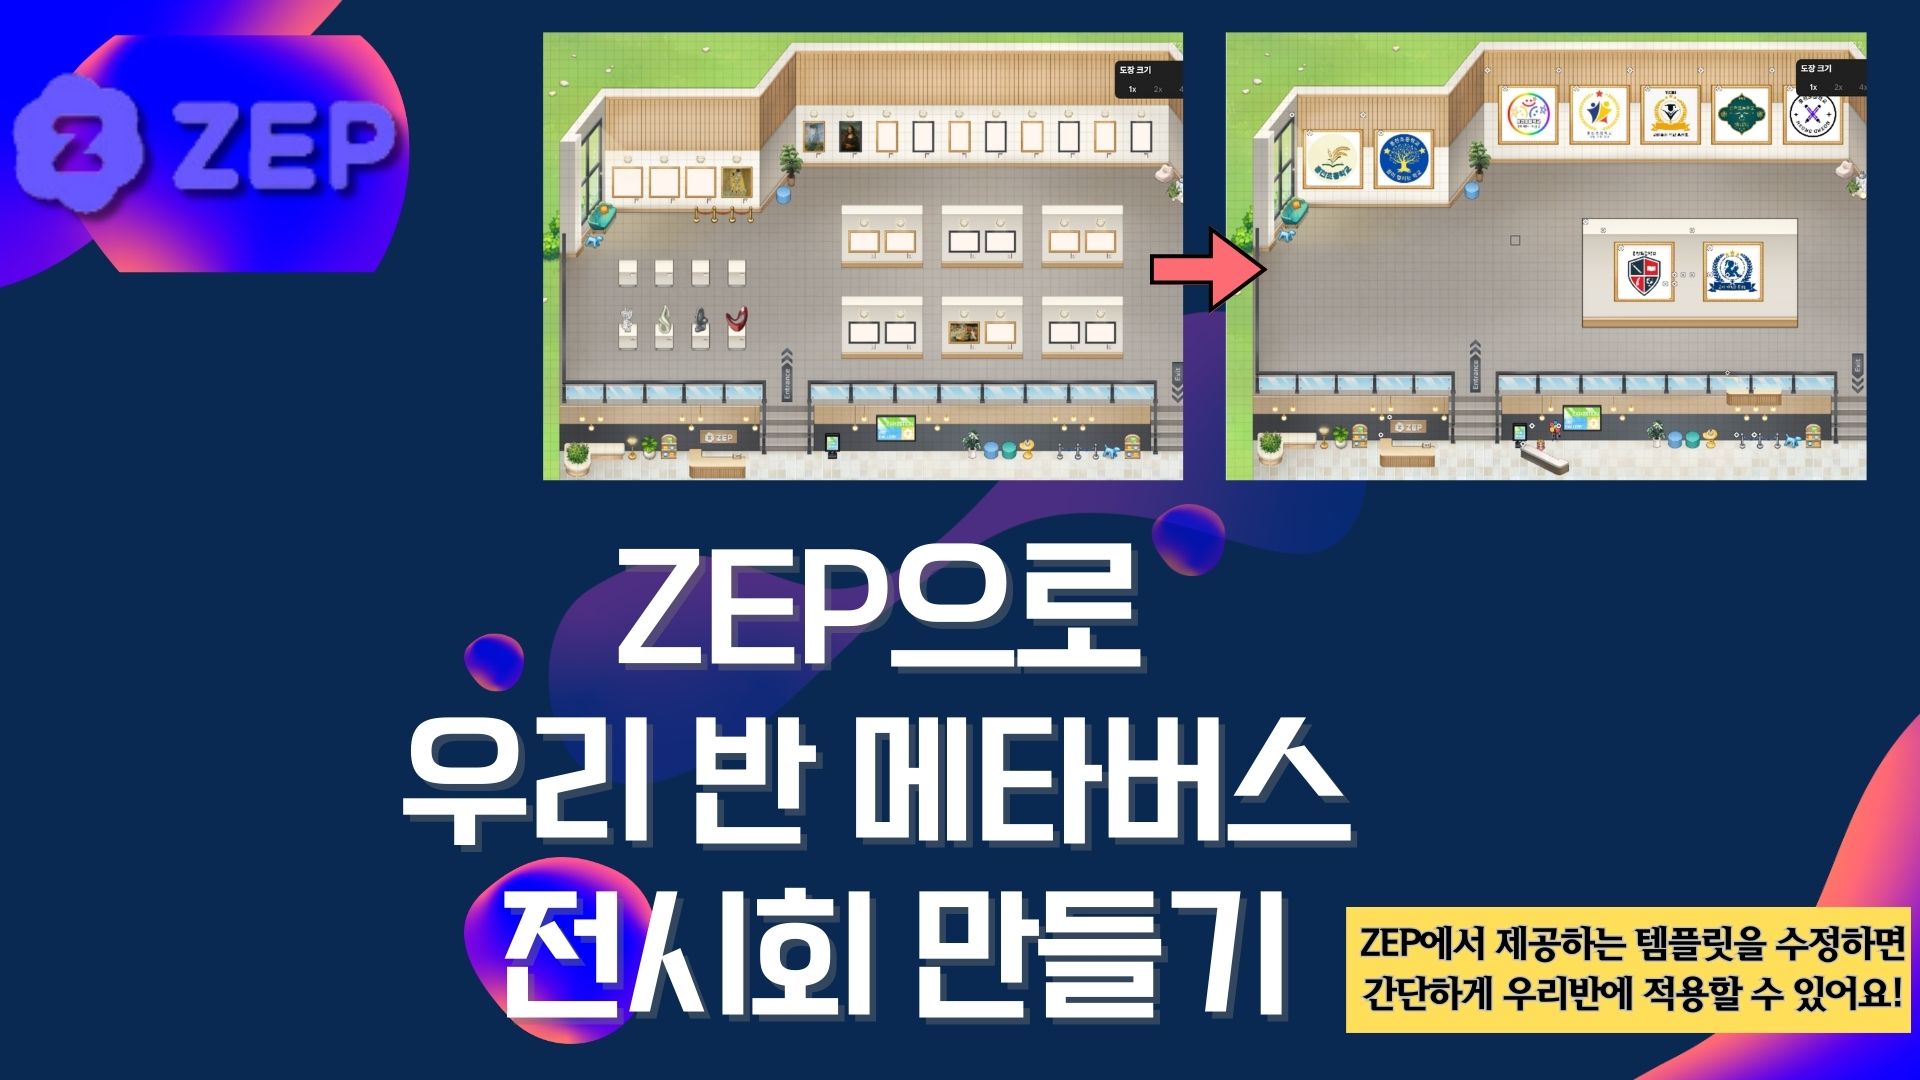 ZEP으로 우리반 메타버스 전시회 만들기 (기본) -3기